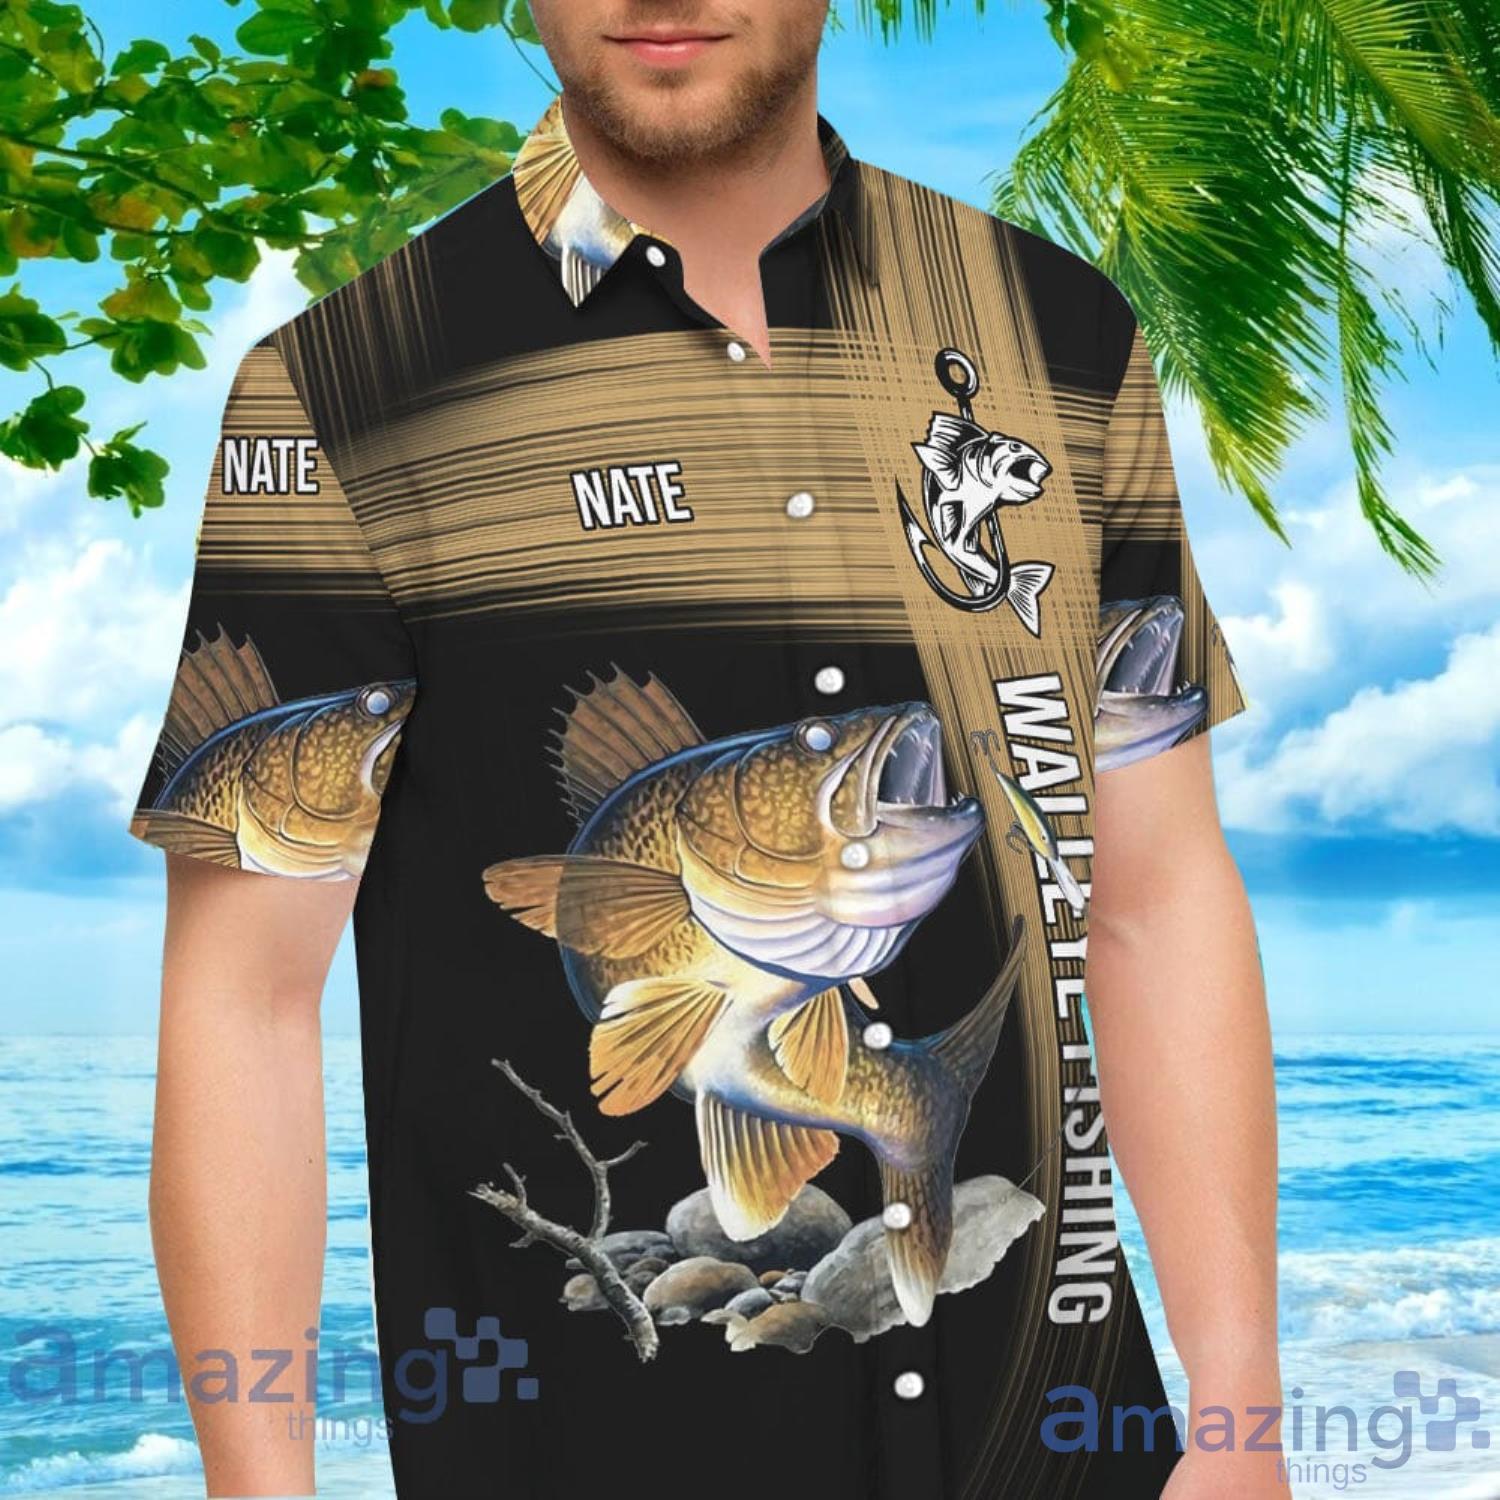 https://image.whatamazingthings.com/2022/12/aloha-hook-walleye-fishing-fishing-hawaiian-shirt-for-men-and-women.jpg